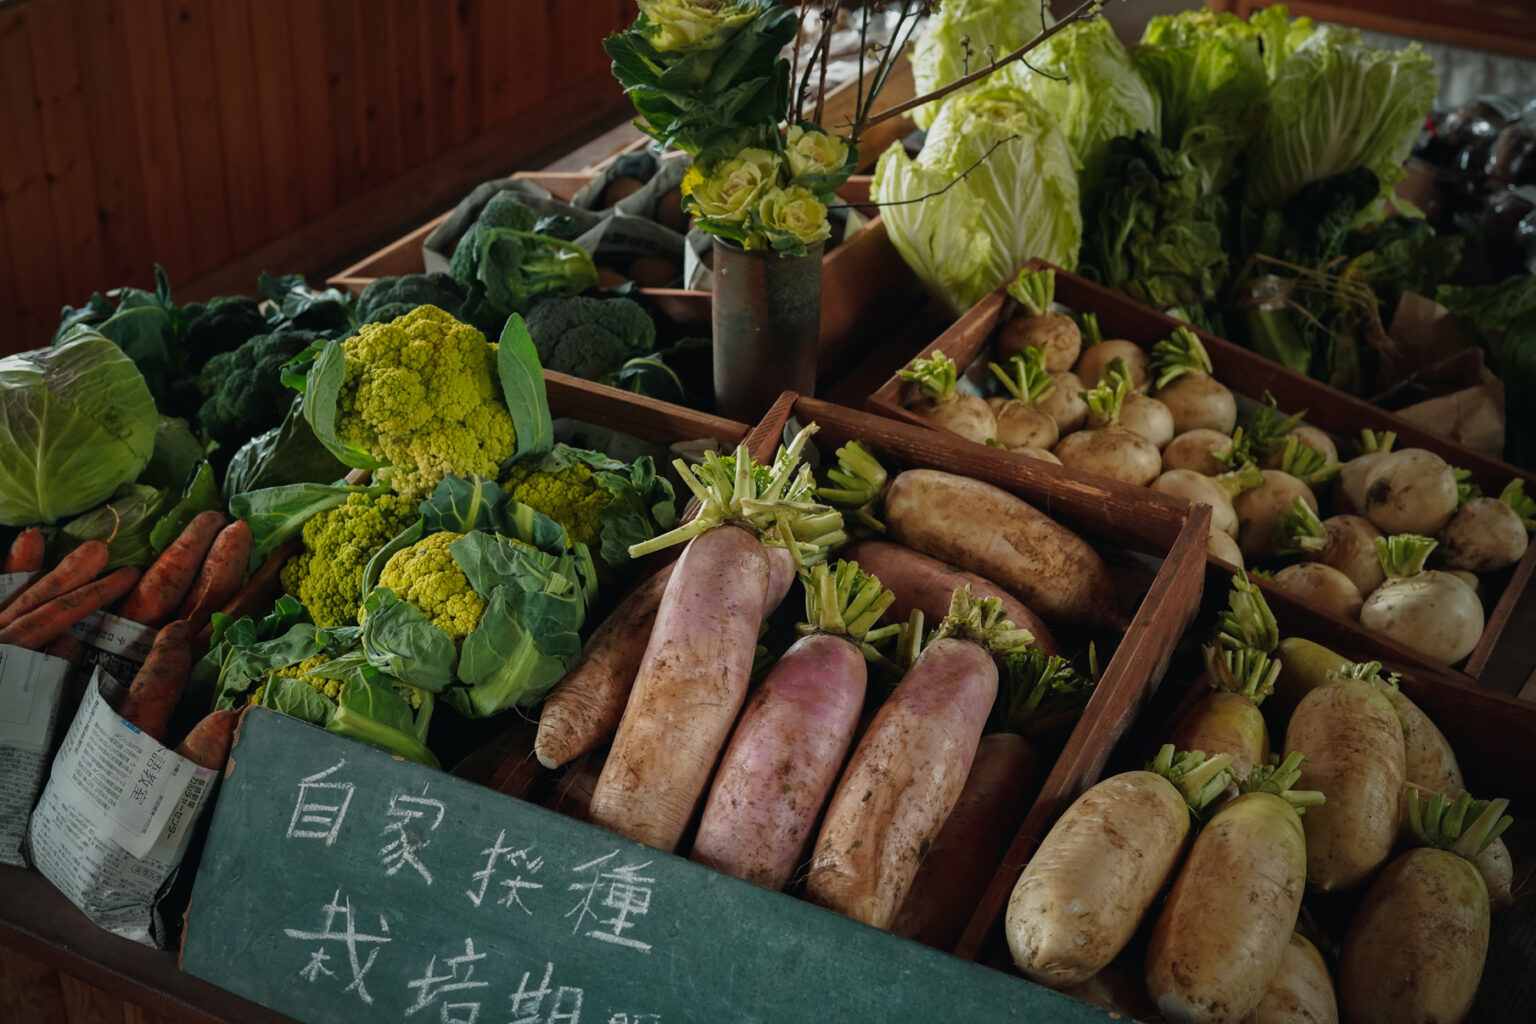 タネトで販売されている野菜は、プラスチックフリー。photo:繁延あづさ